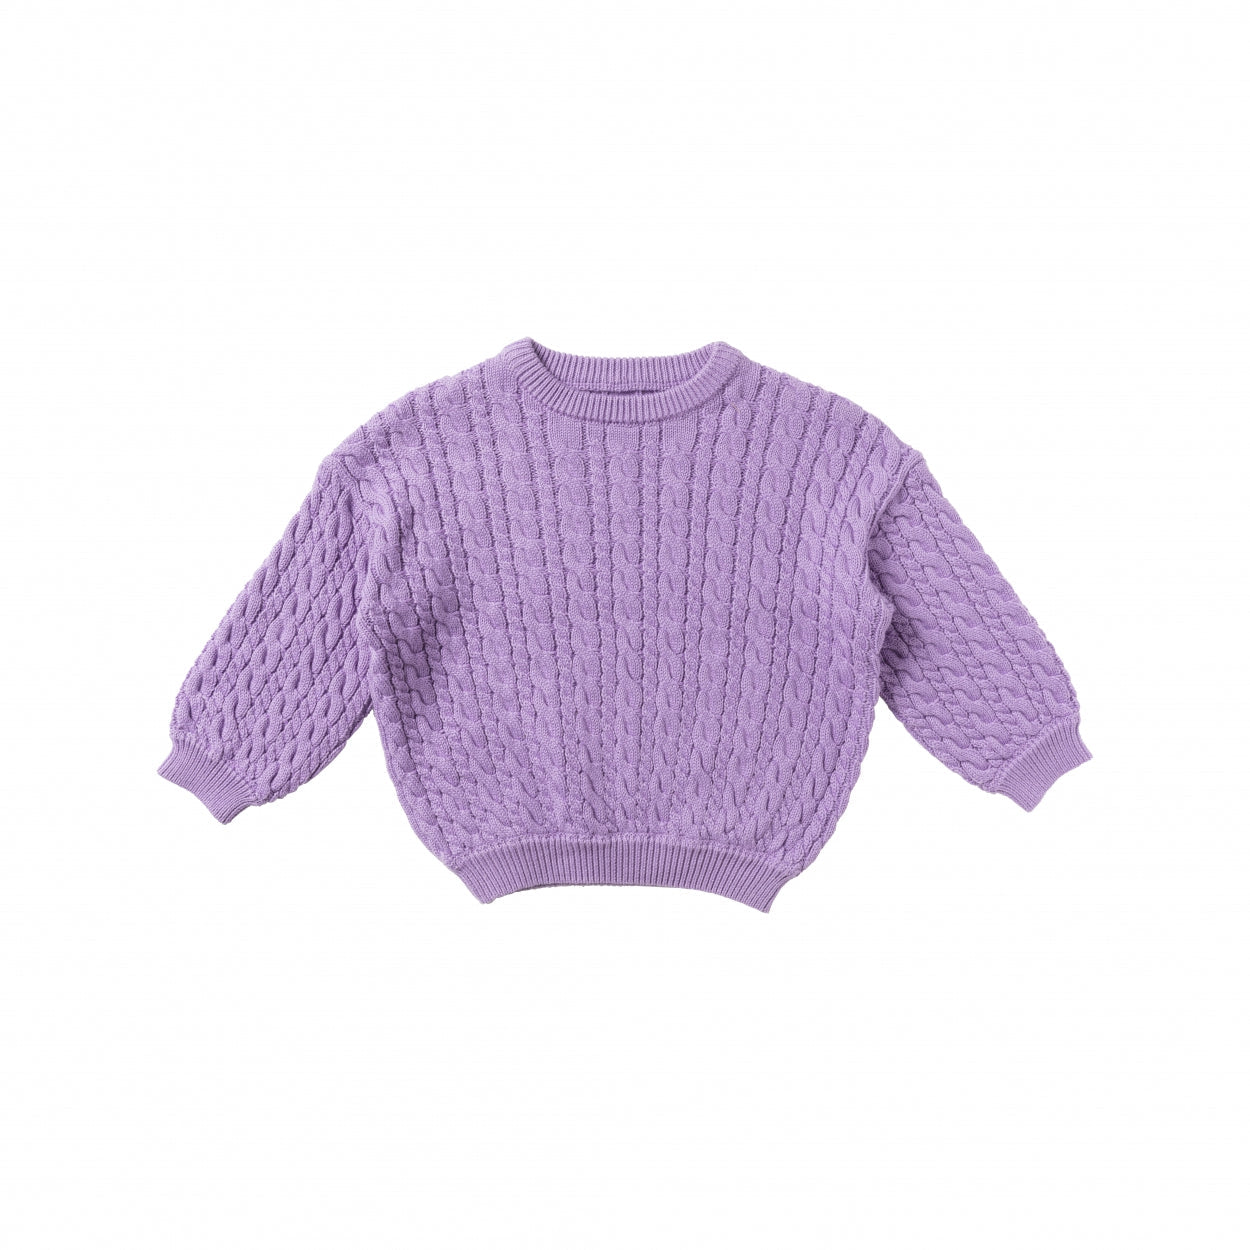 Meisjes Sweater Cable Knit | Gerry van Your Wishes in de kleur Lavender in maat 122-128.